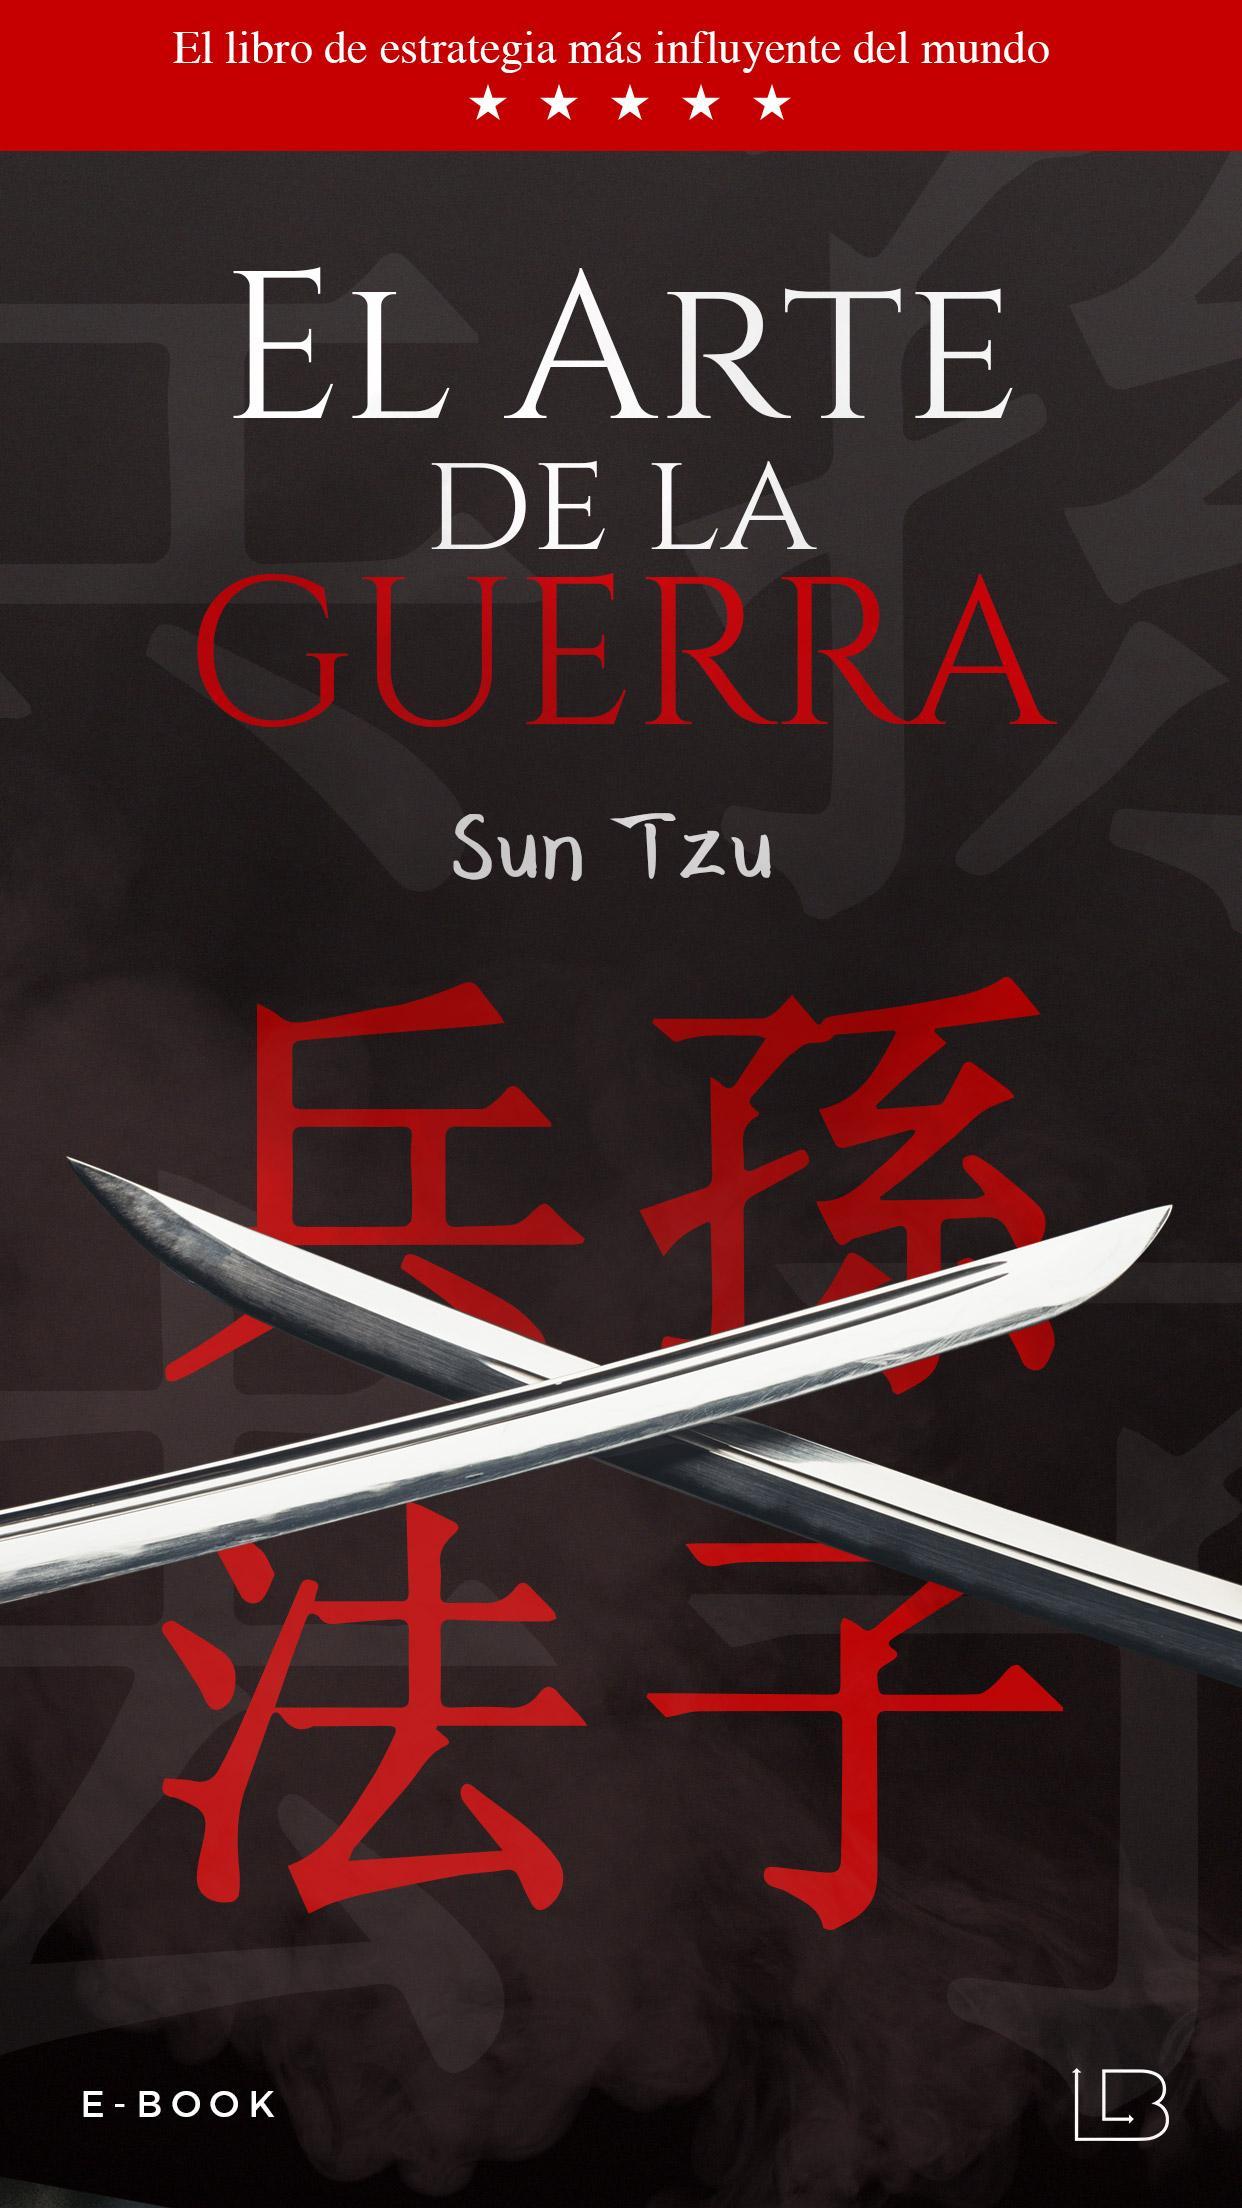 El Arte de la Guerra - Sun Tzu libro completo for Android - APK Download